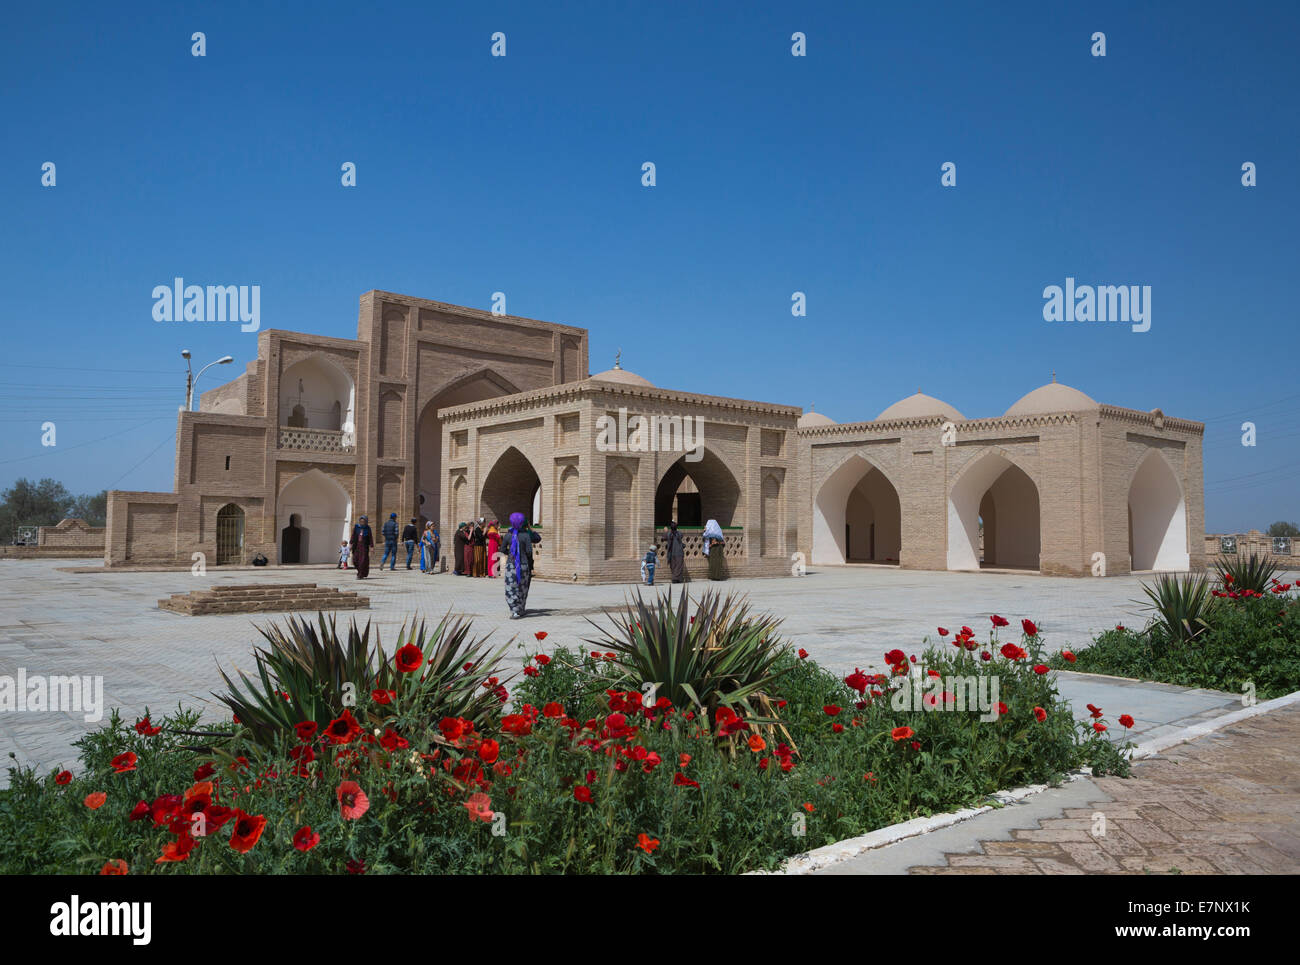 Archäologische Stätte, Hoya Yusuf, Mausoleum, Merv, Turkmenistan, Zentral-Asien, Asien, Amapola, Architektur, Blumen, Grab, histo Stockfoto